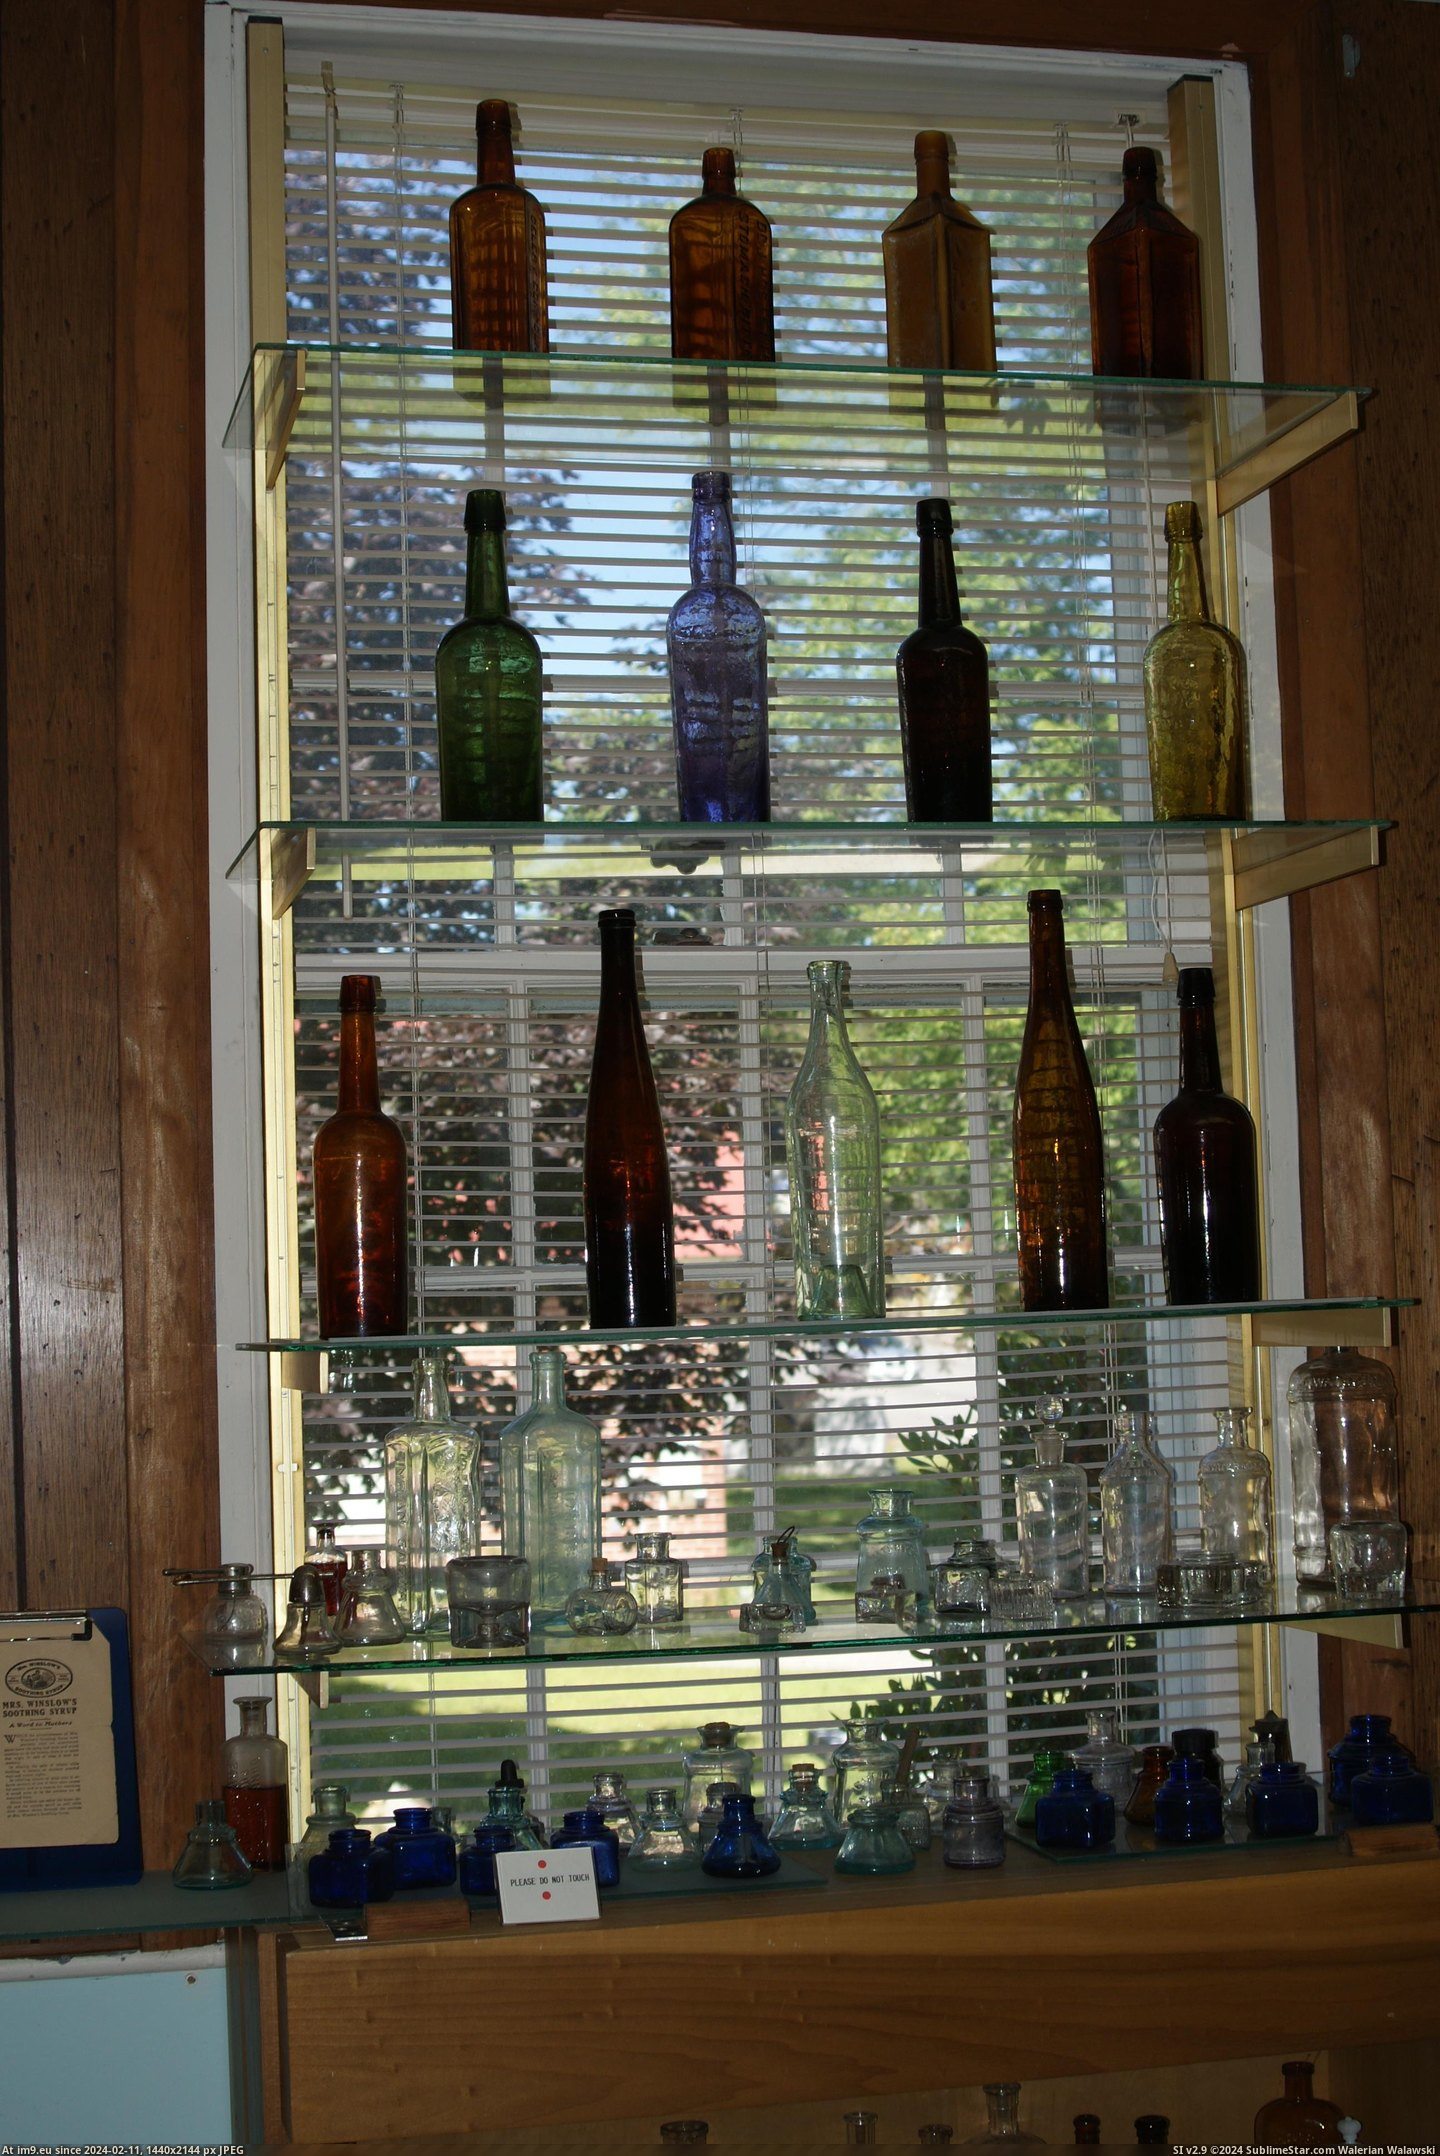 #Museum #Maine #Naples #Bottle MAINE BOTTLE MUSEUM NAPLES (10) Pic. (Obraz z album MAINE BOTTLE MUSEUM))